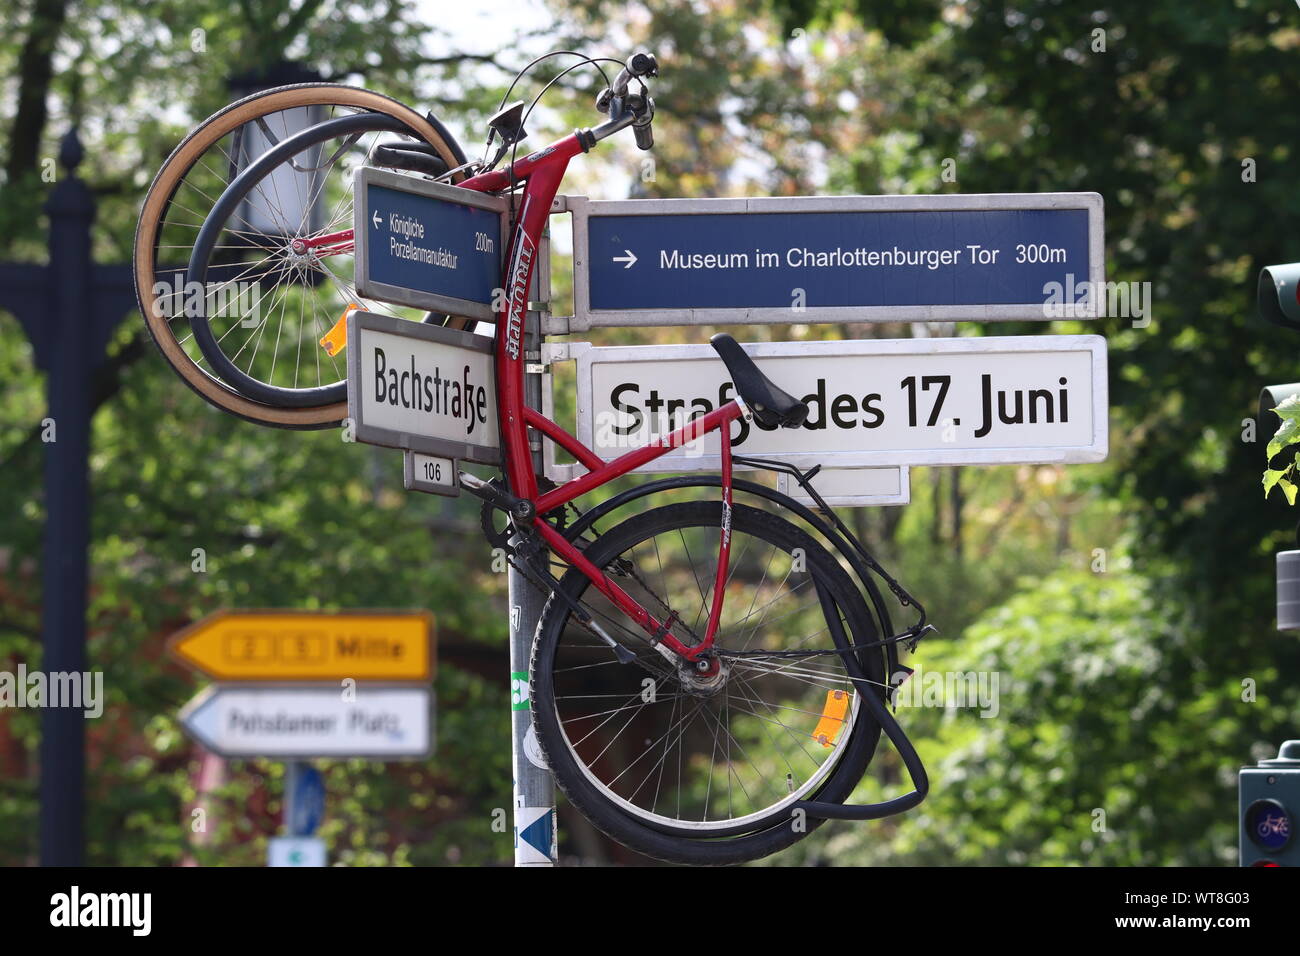 Fahrrad hängt über ein Straßenschild à Berlin, Straße des 17. Juni * Location plane sur un panneau routier à Berlin, la rue du 17 juin Banque D'Images